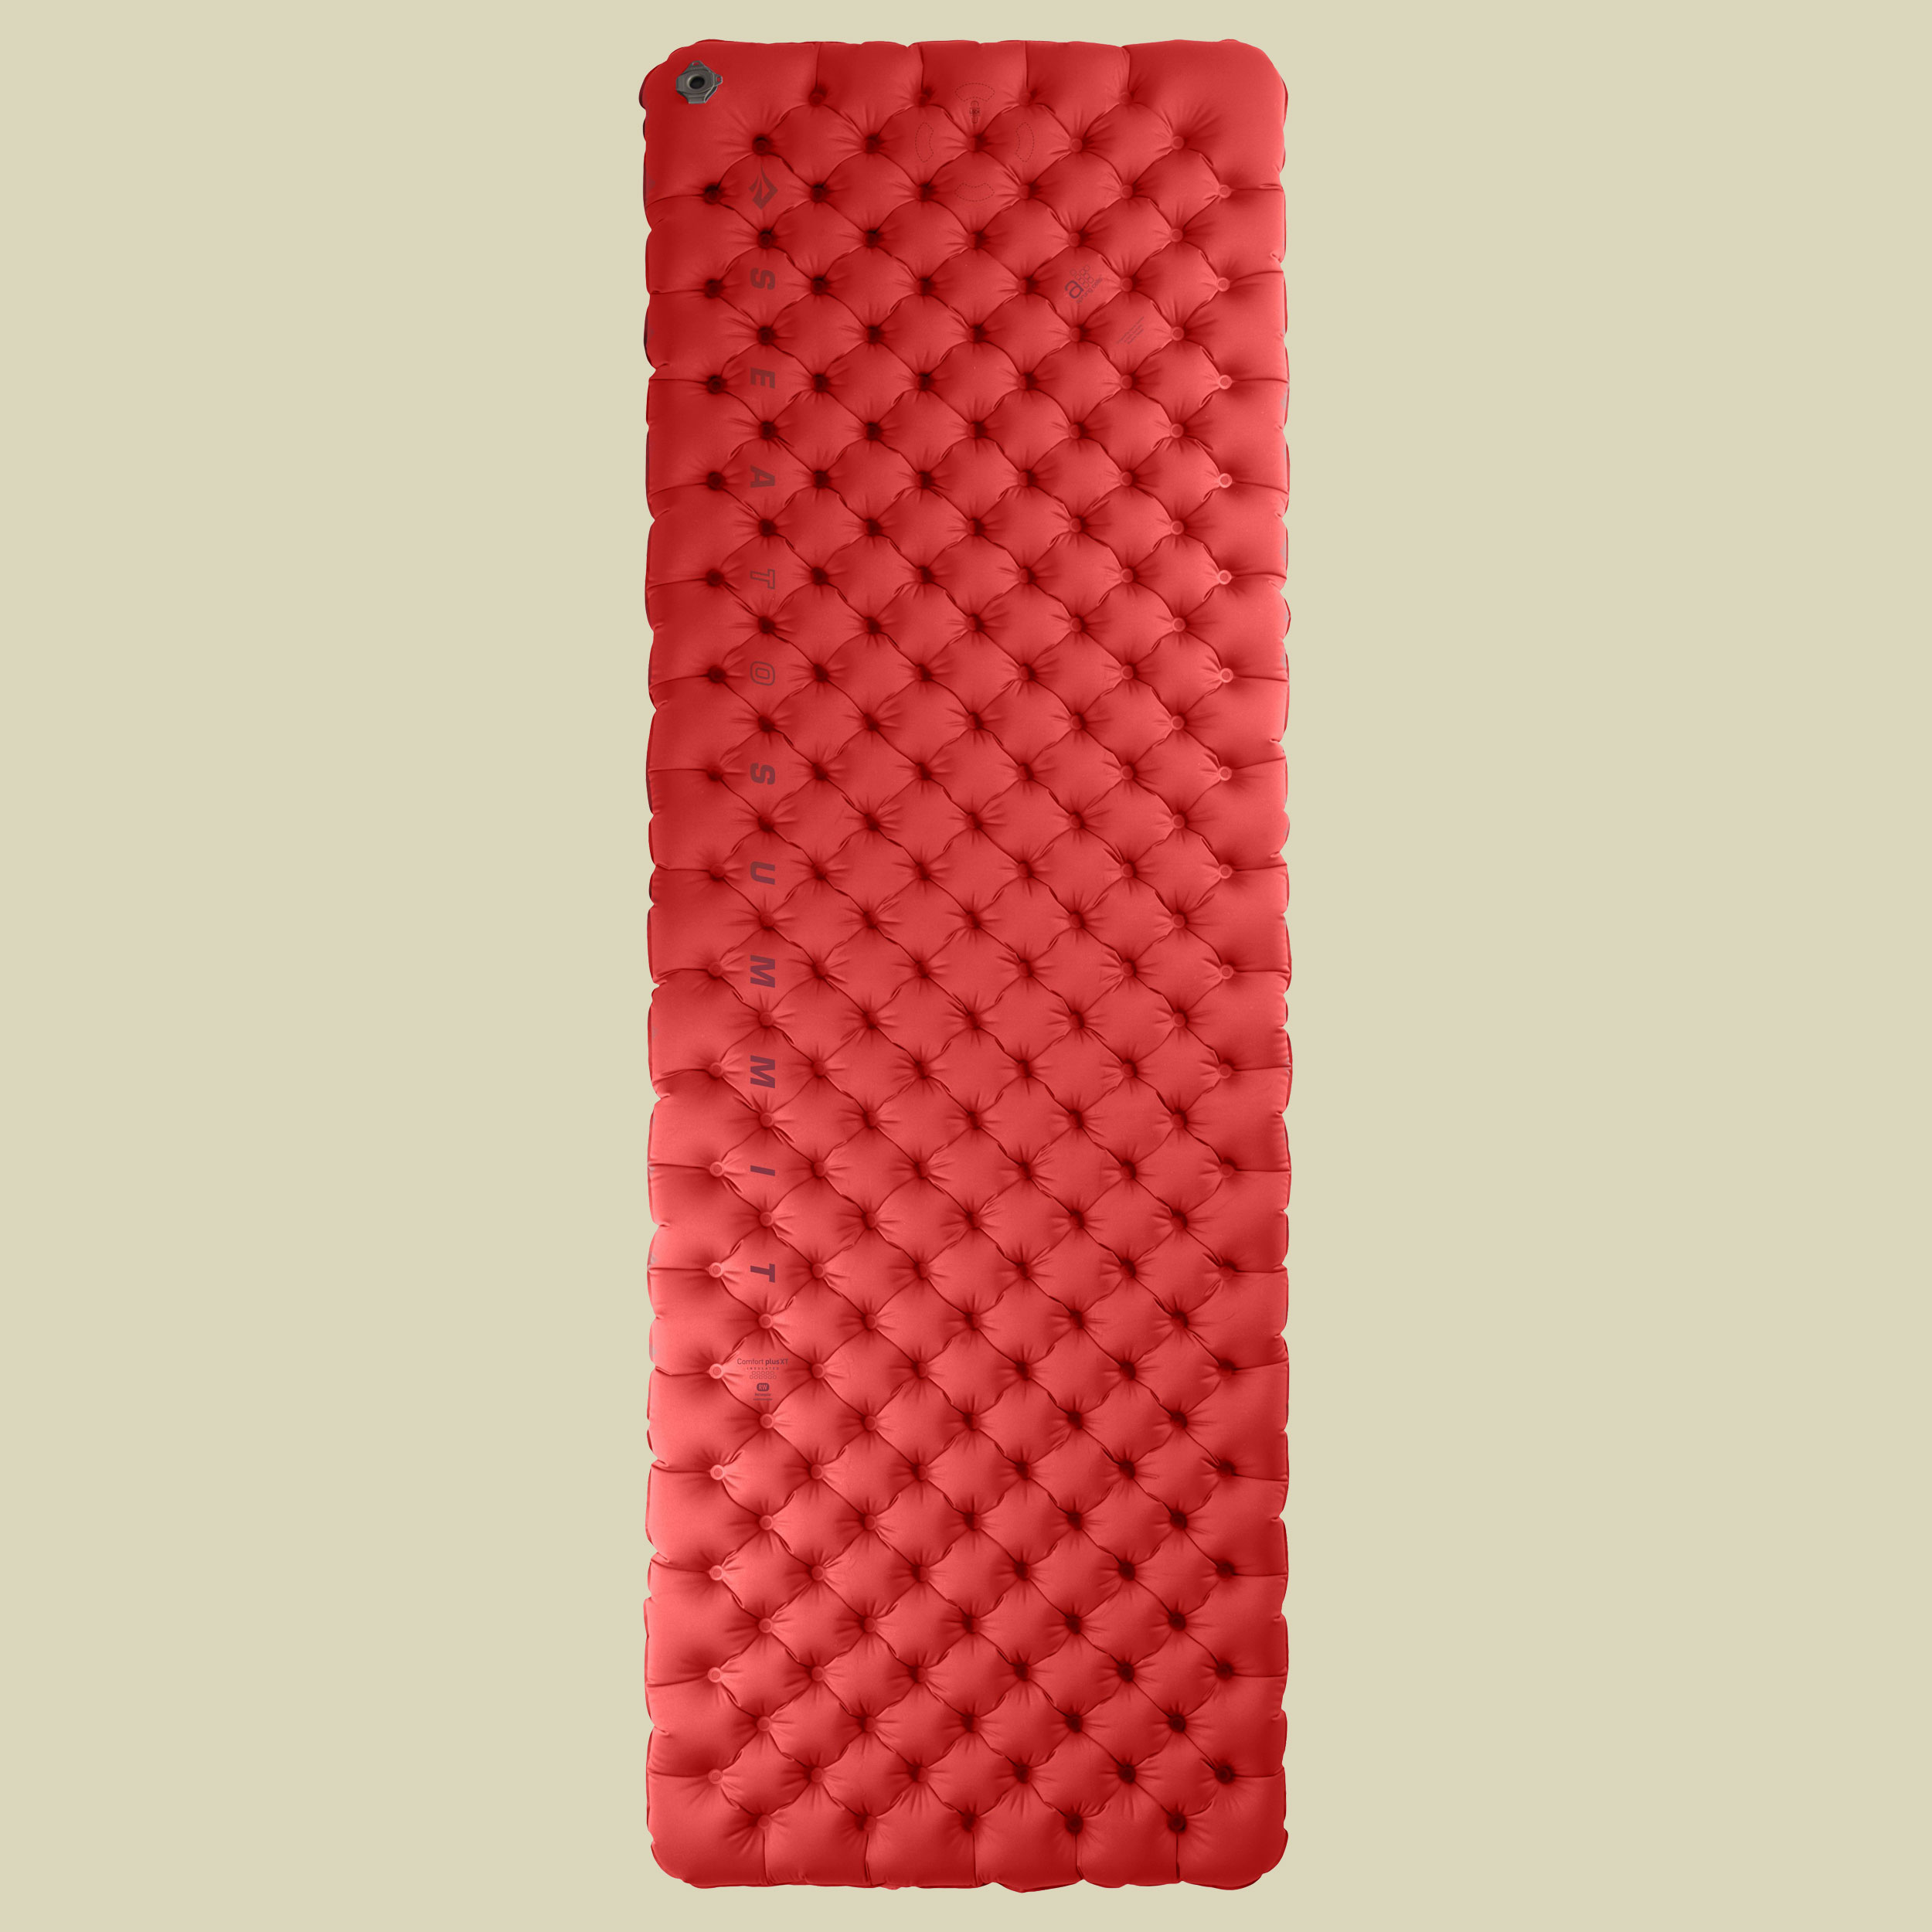 Comfort Plus XT Insulated Mat Rectangular Liegefläche 183 x 64 cm Farbe red